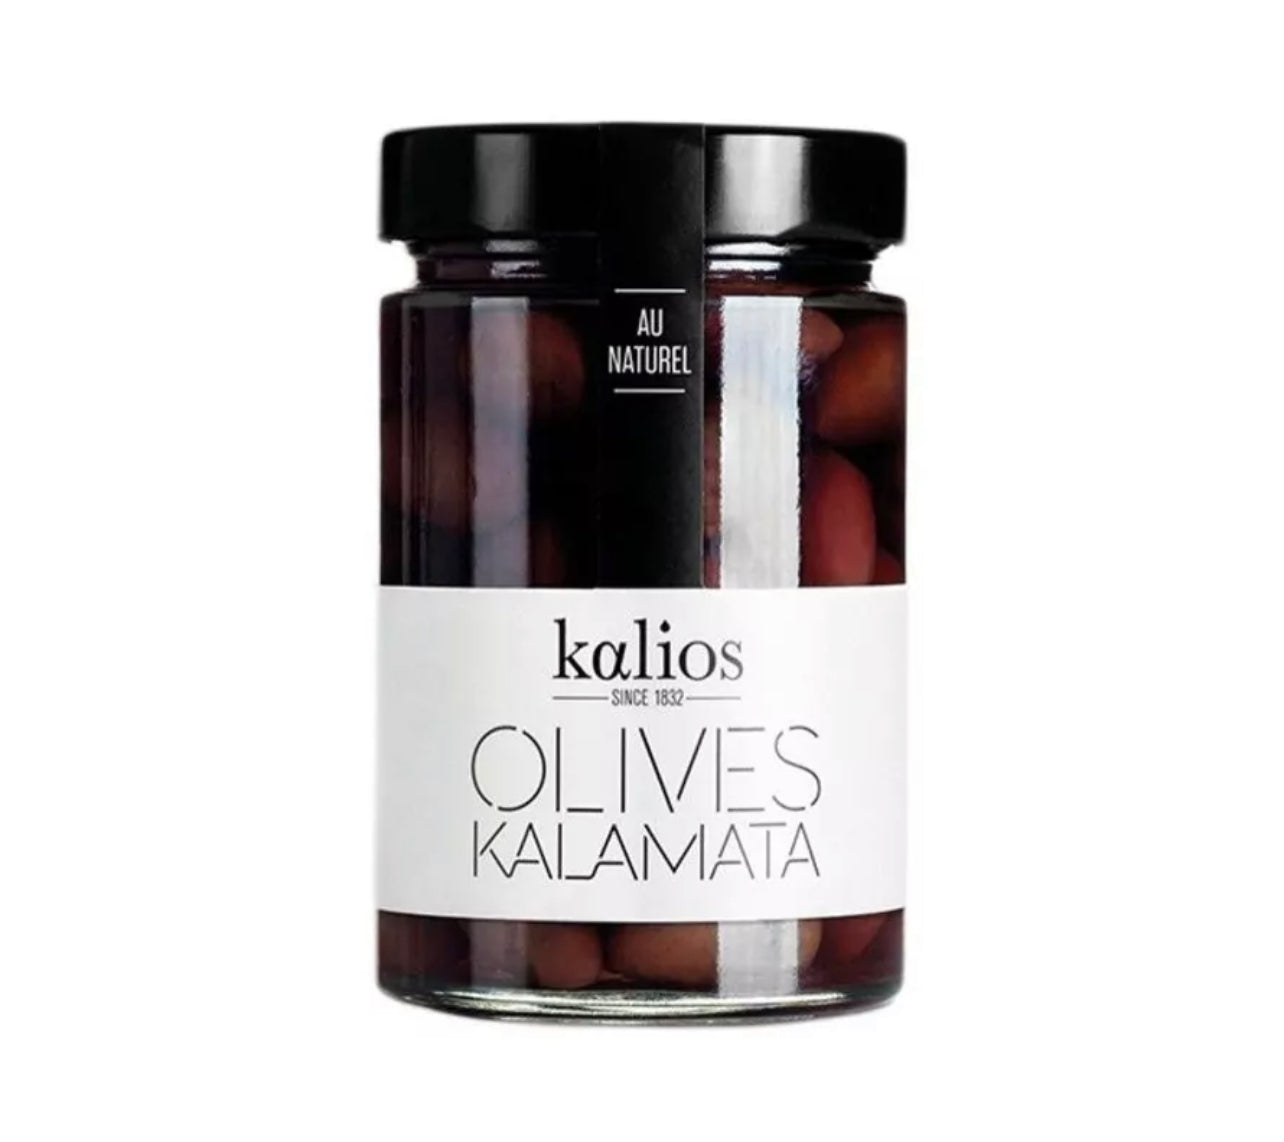 Natural Kalamata olive - 310g